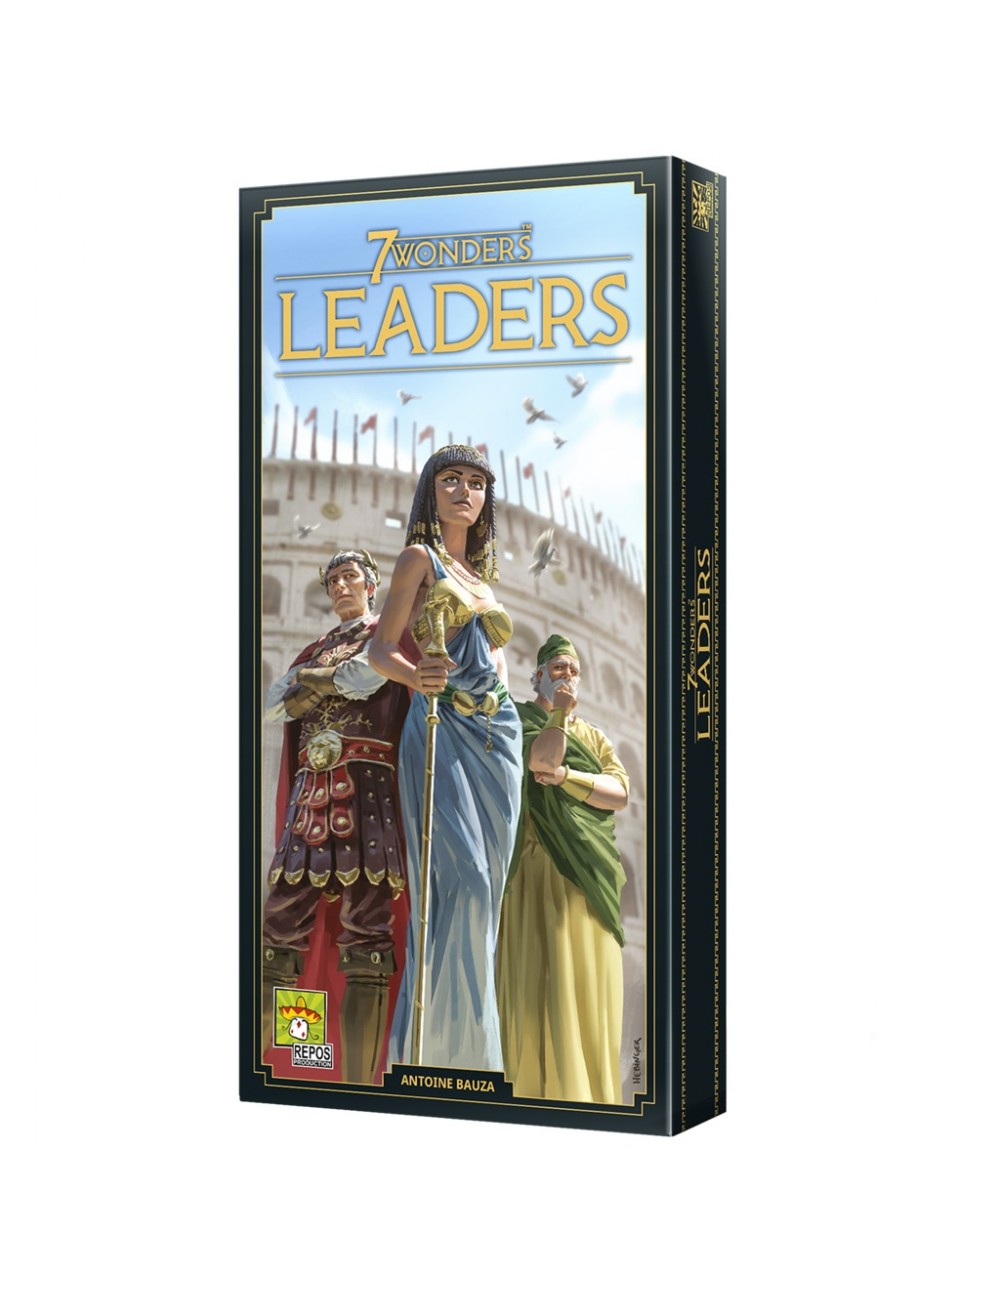 7 Wonders: Leaders SEV-SP034488 Asmodee Asmodee